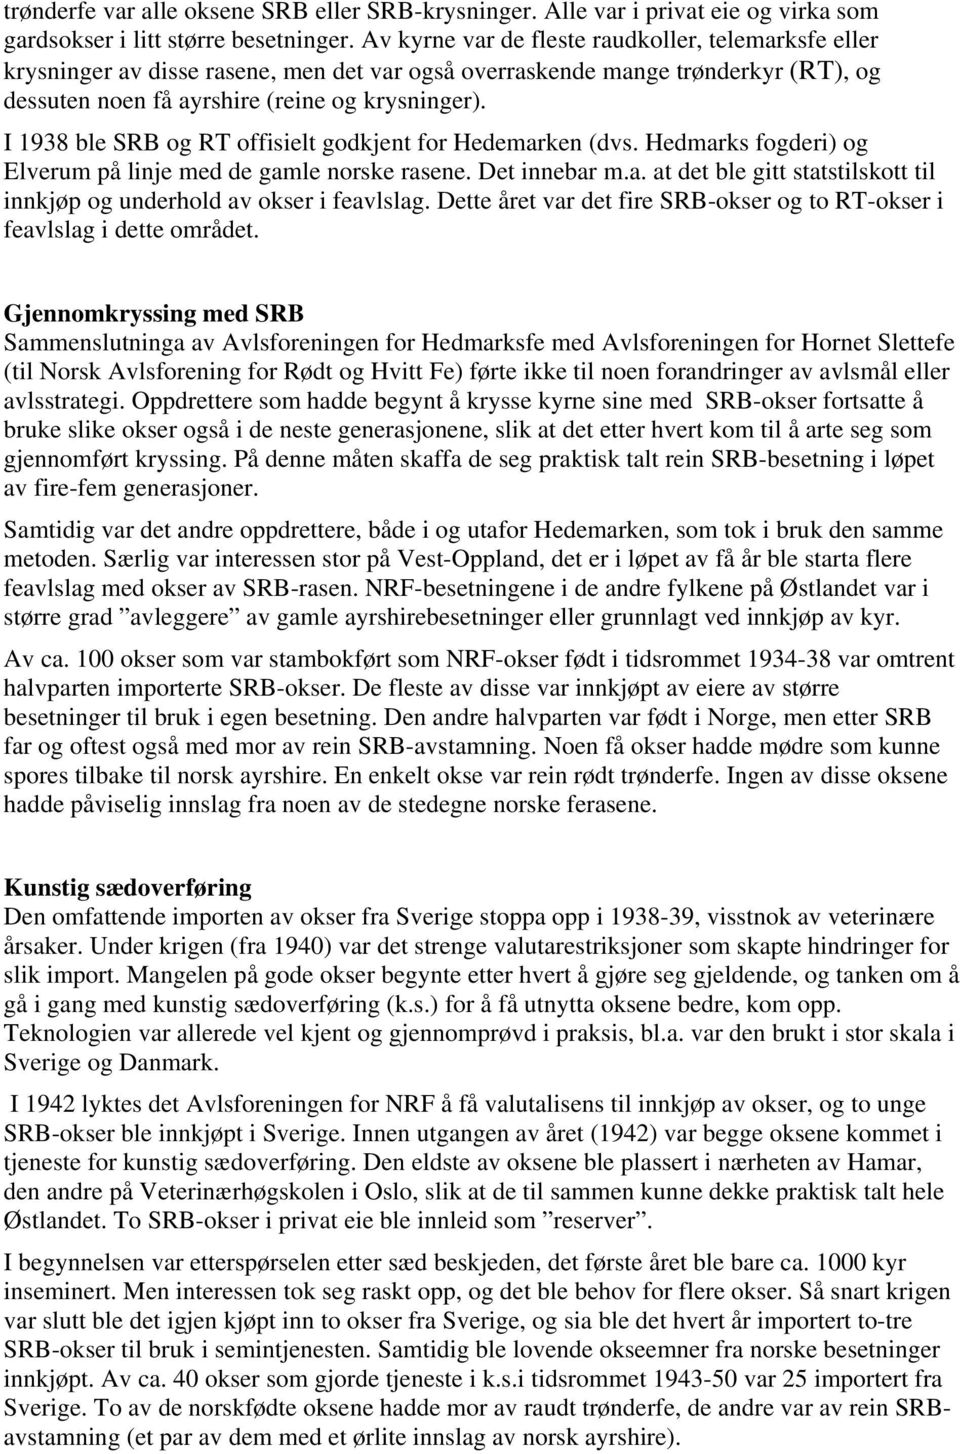 I 1938 ble SRB og RT offisielt godkjent for Hedemarken (dvs. Hedmarks fogderi) og Elverum på linje med de gamle norske rasene. Det innebar m.a. at det ble gitt statstilskott til innkjøp og underhold av okser i feavlslag.